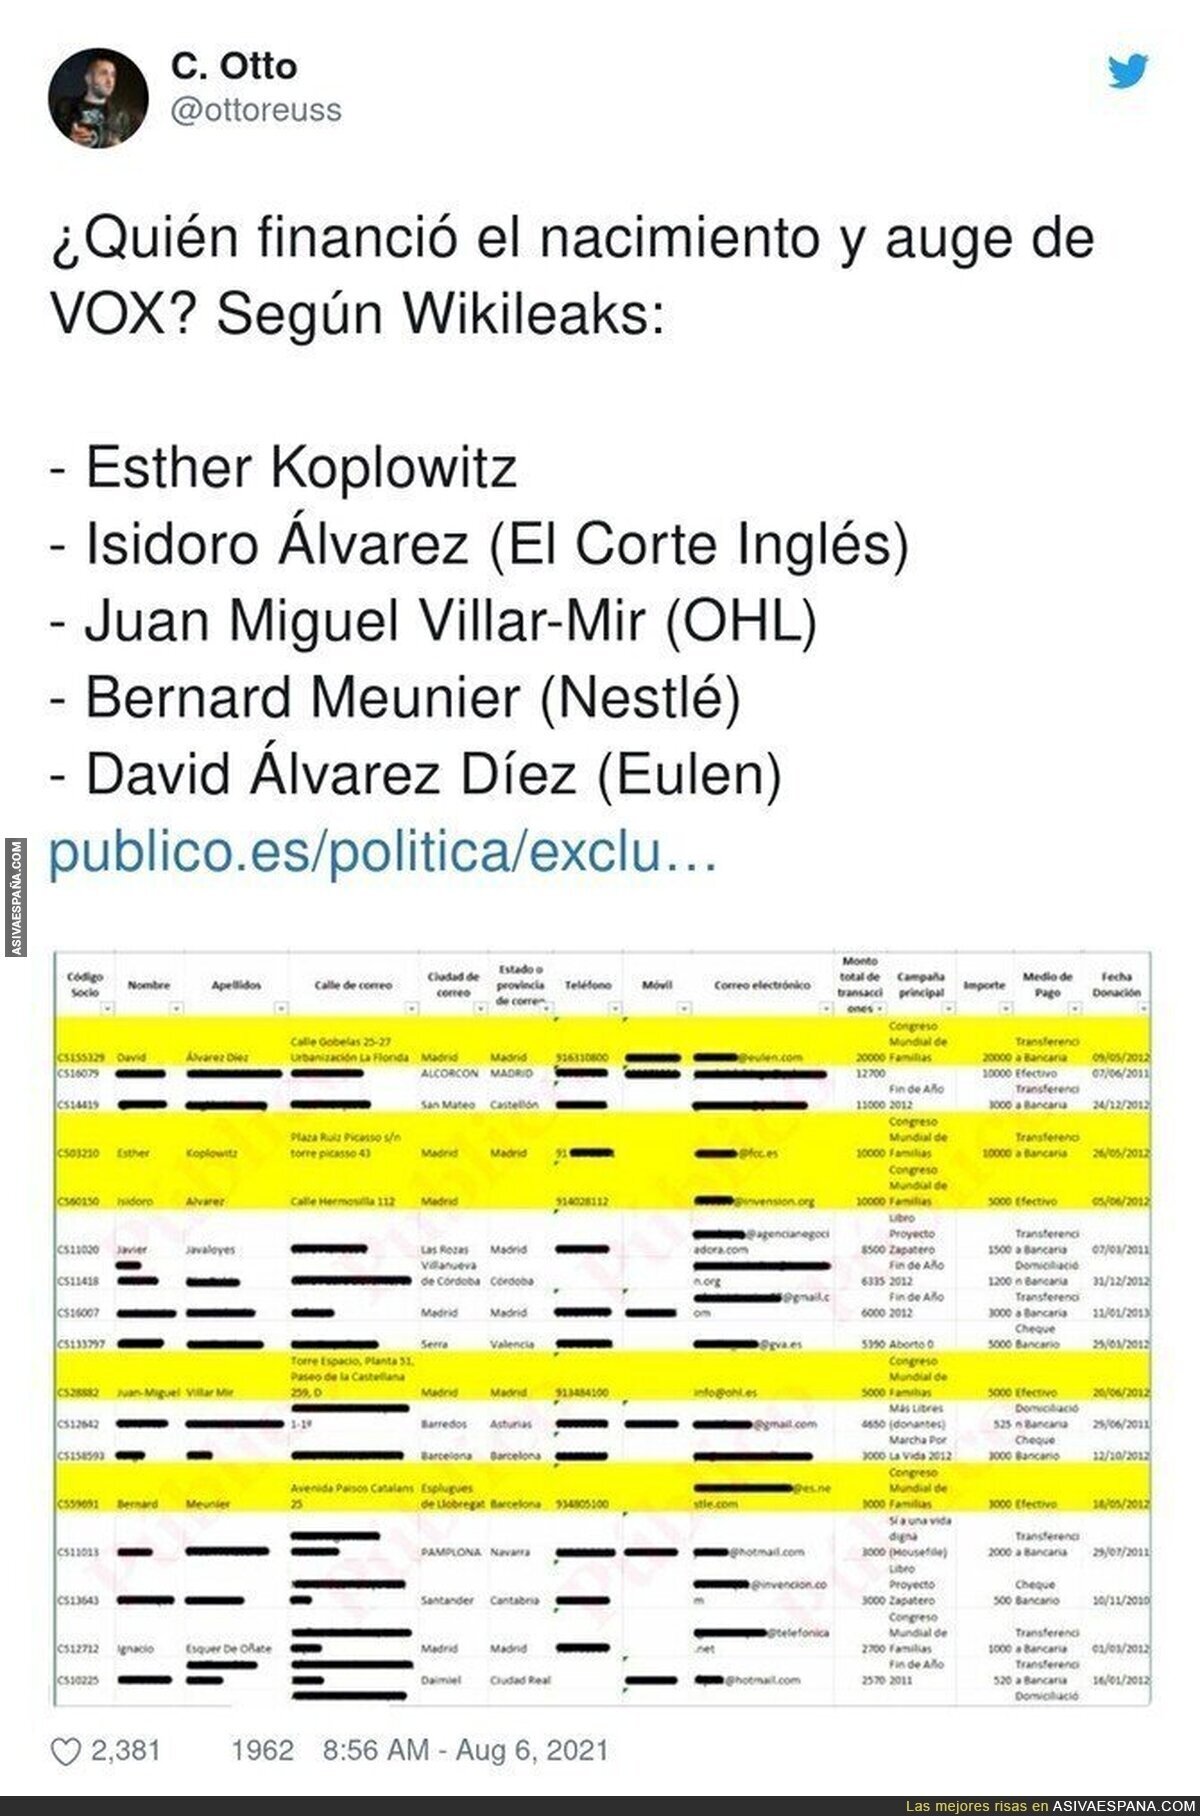 Wikileaks saca a la luz quienes financiaron VOX en su nacimiento